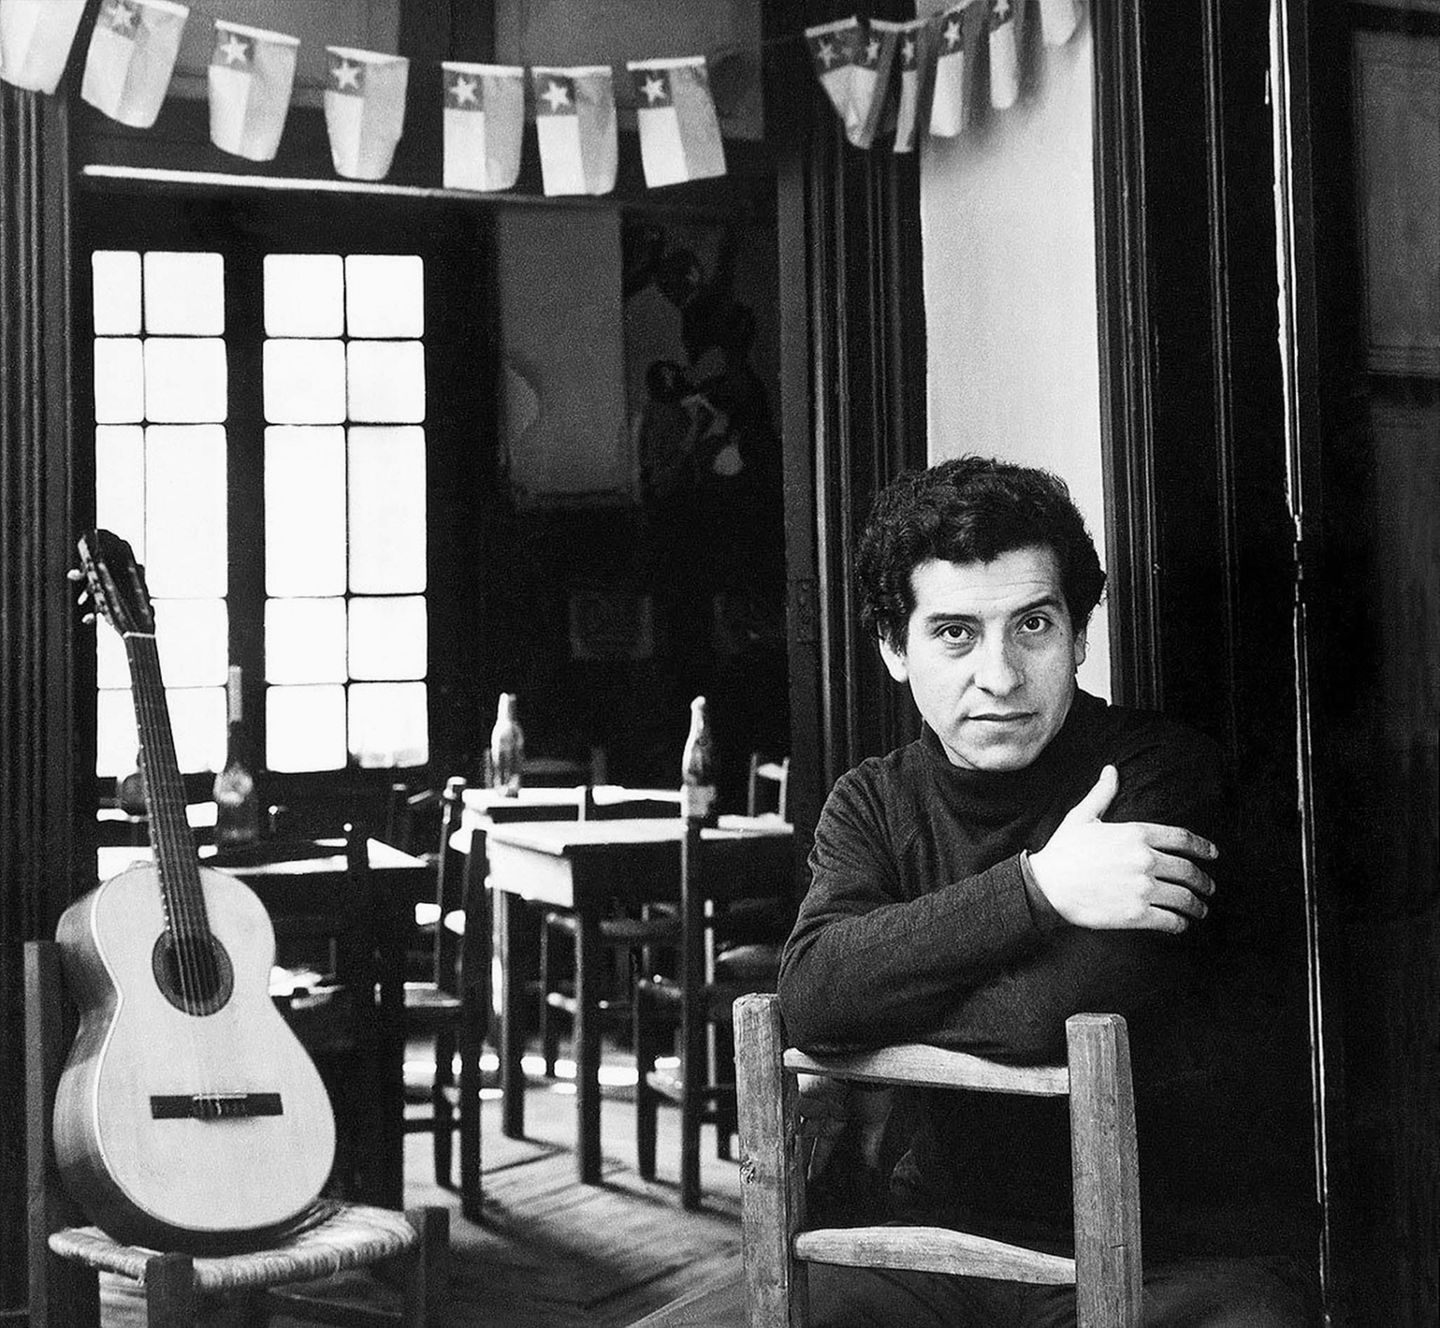 Ein Leben mit Gitarre: Victor Jara ist der bekannteste Sänger Chiles, als Militärs am 11. September 1973 putschen. Wenige Tage später wird er eines der ersten Opfer der Diktatur